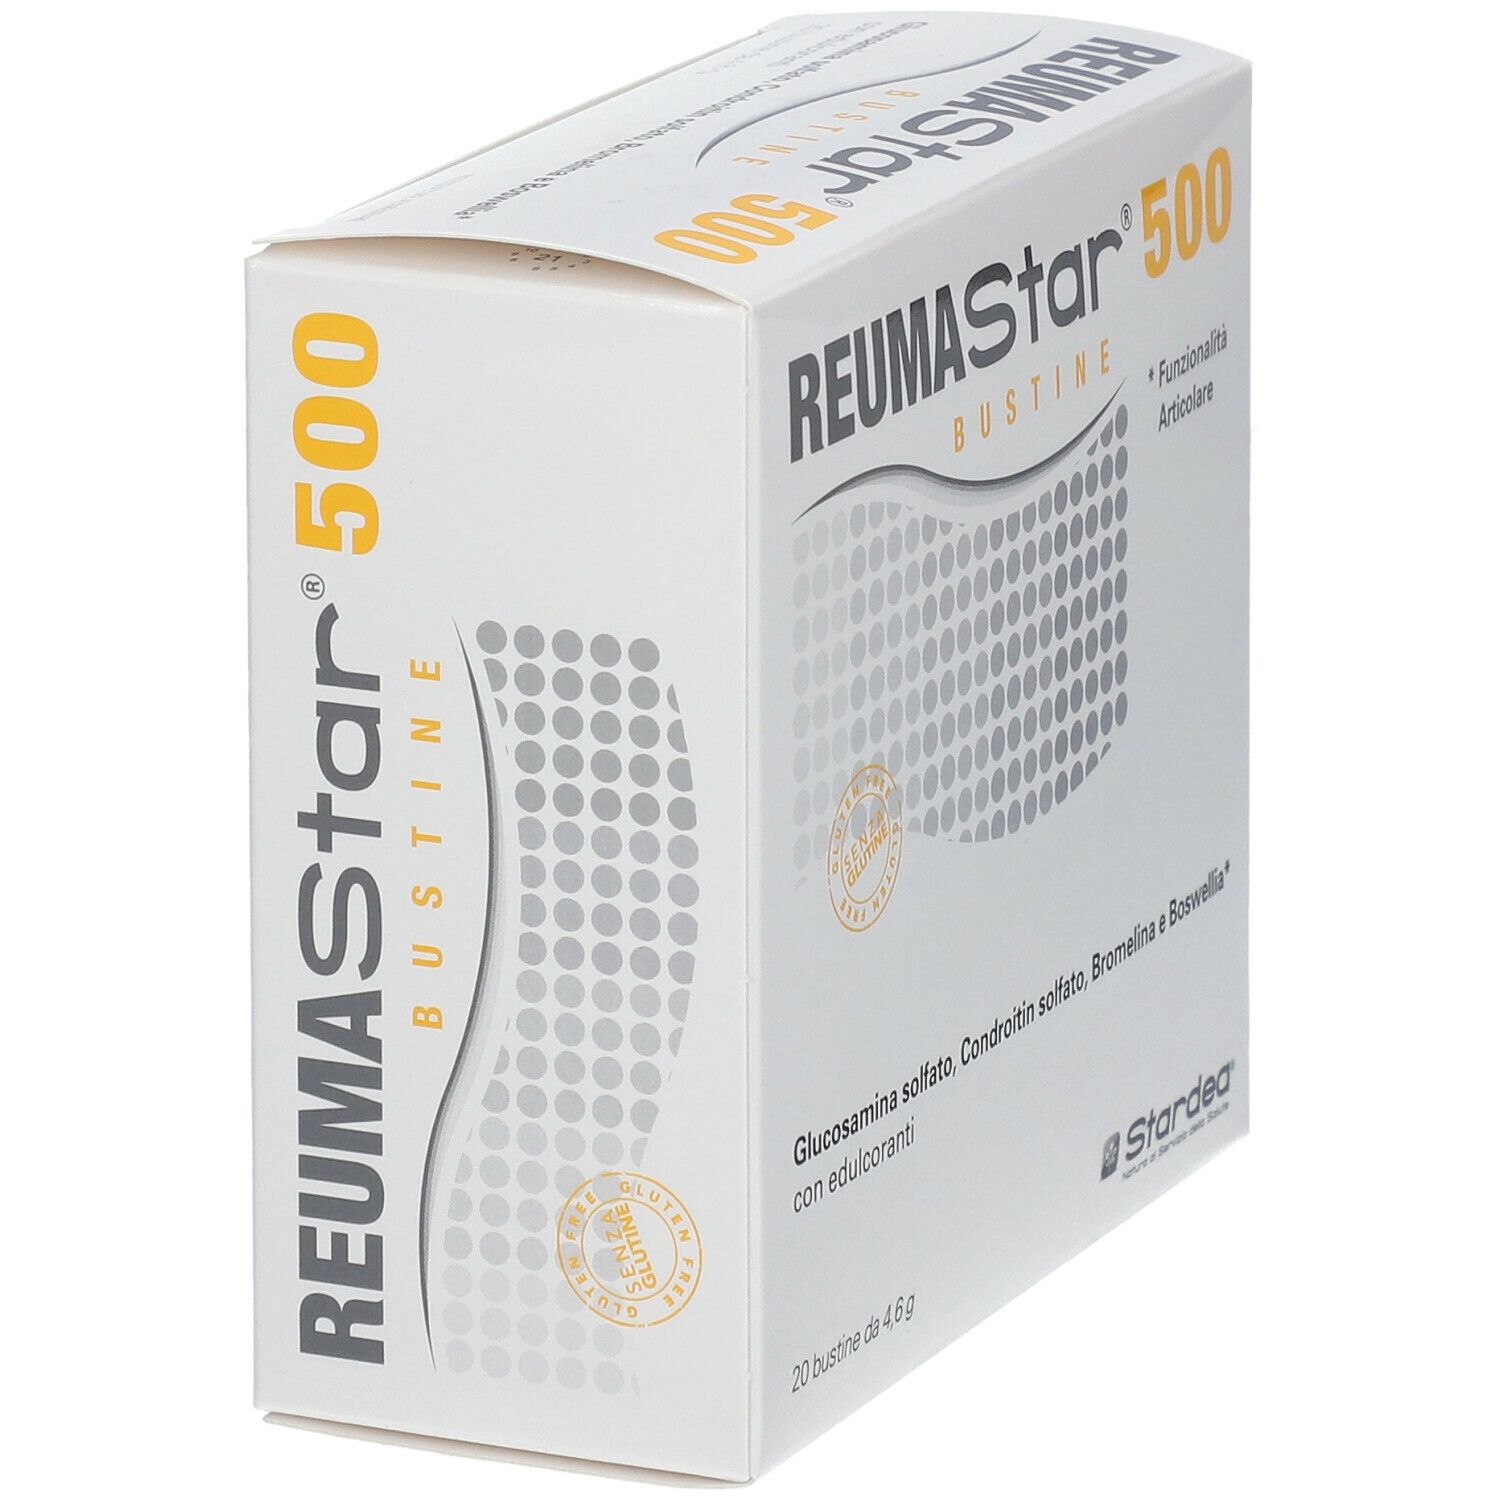 REUMAStar® 500